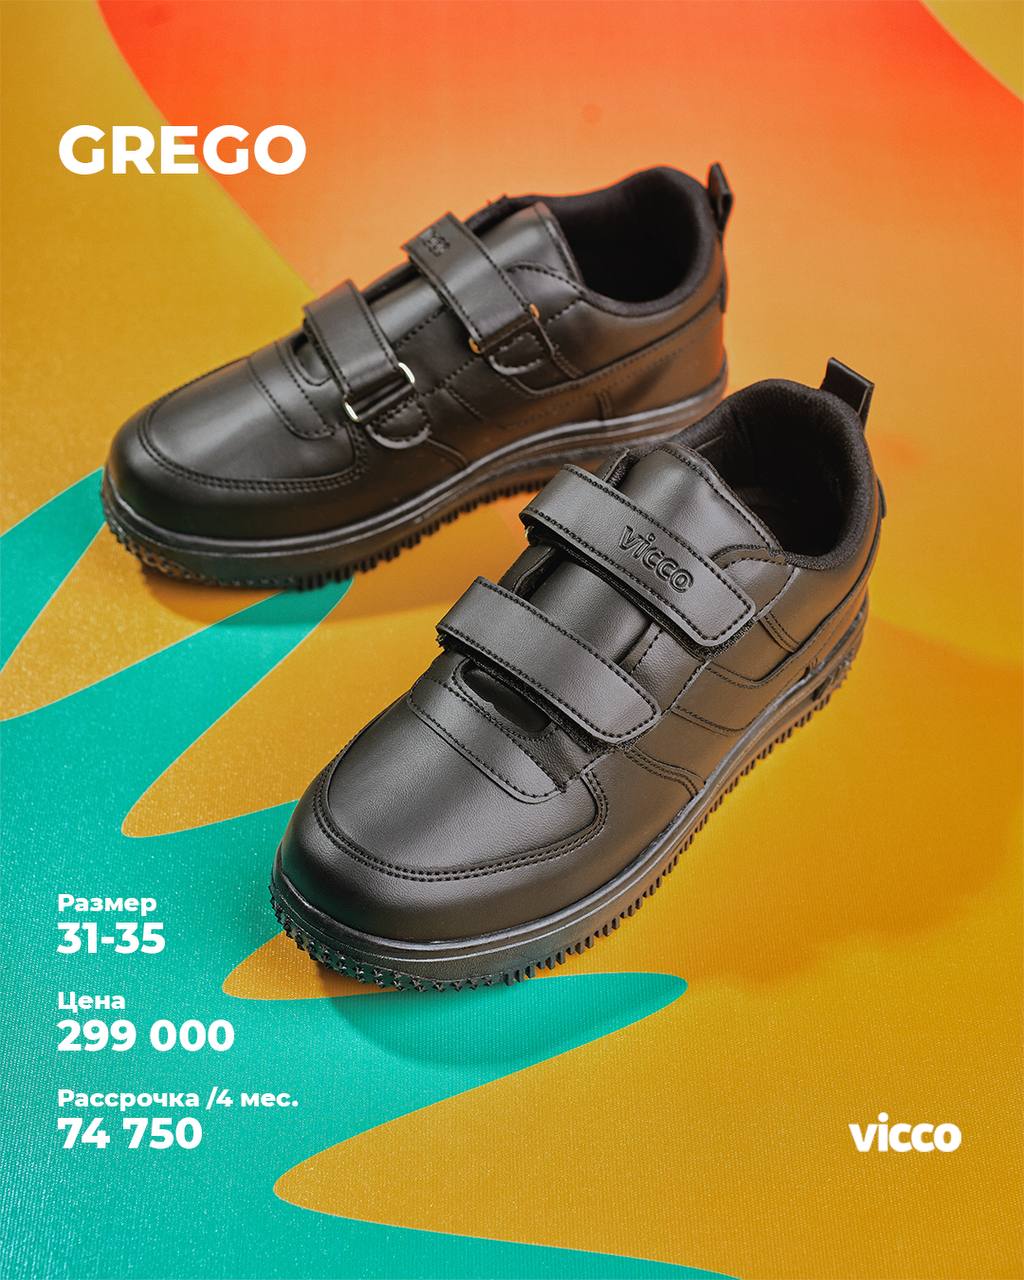 Купить школьную обувь - Коллекция Grego